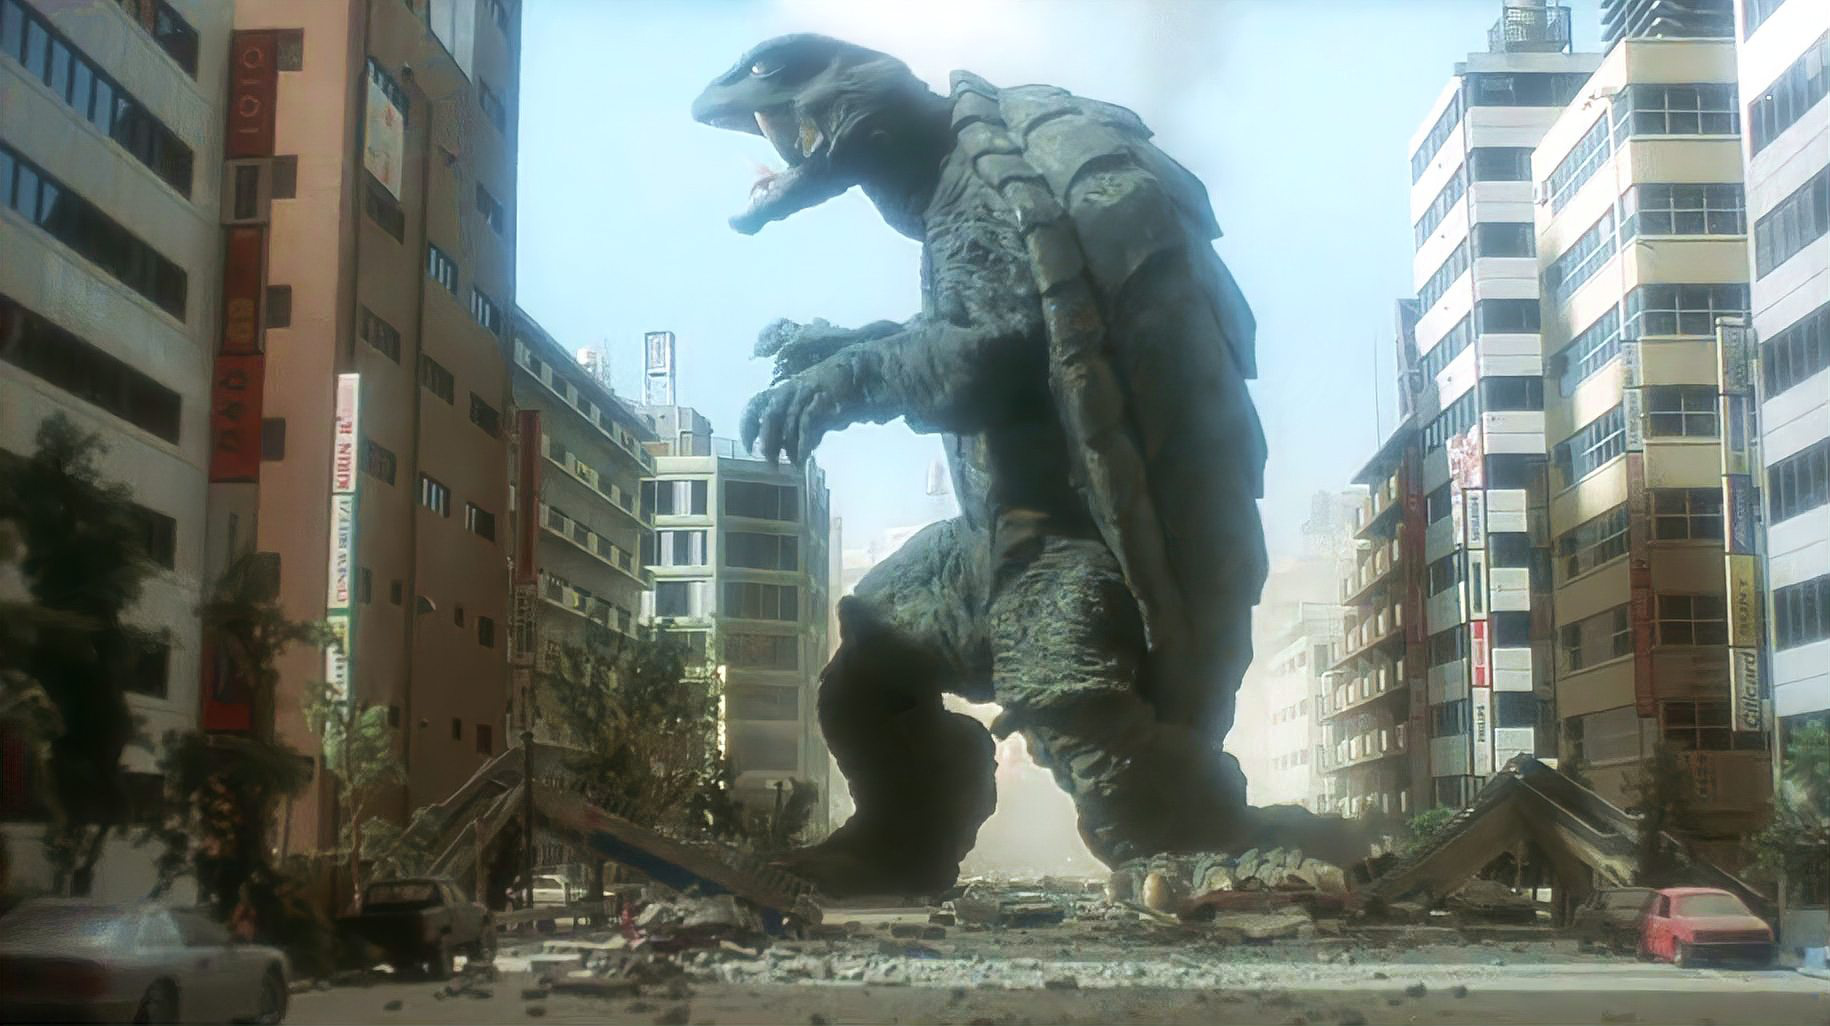 怪兽入侵城市,却被一只身高60米的巨龟打败,一部科幻动作电影